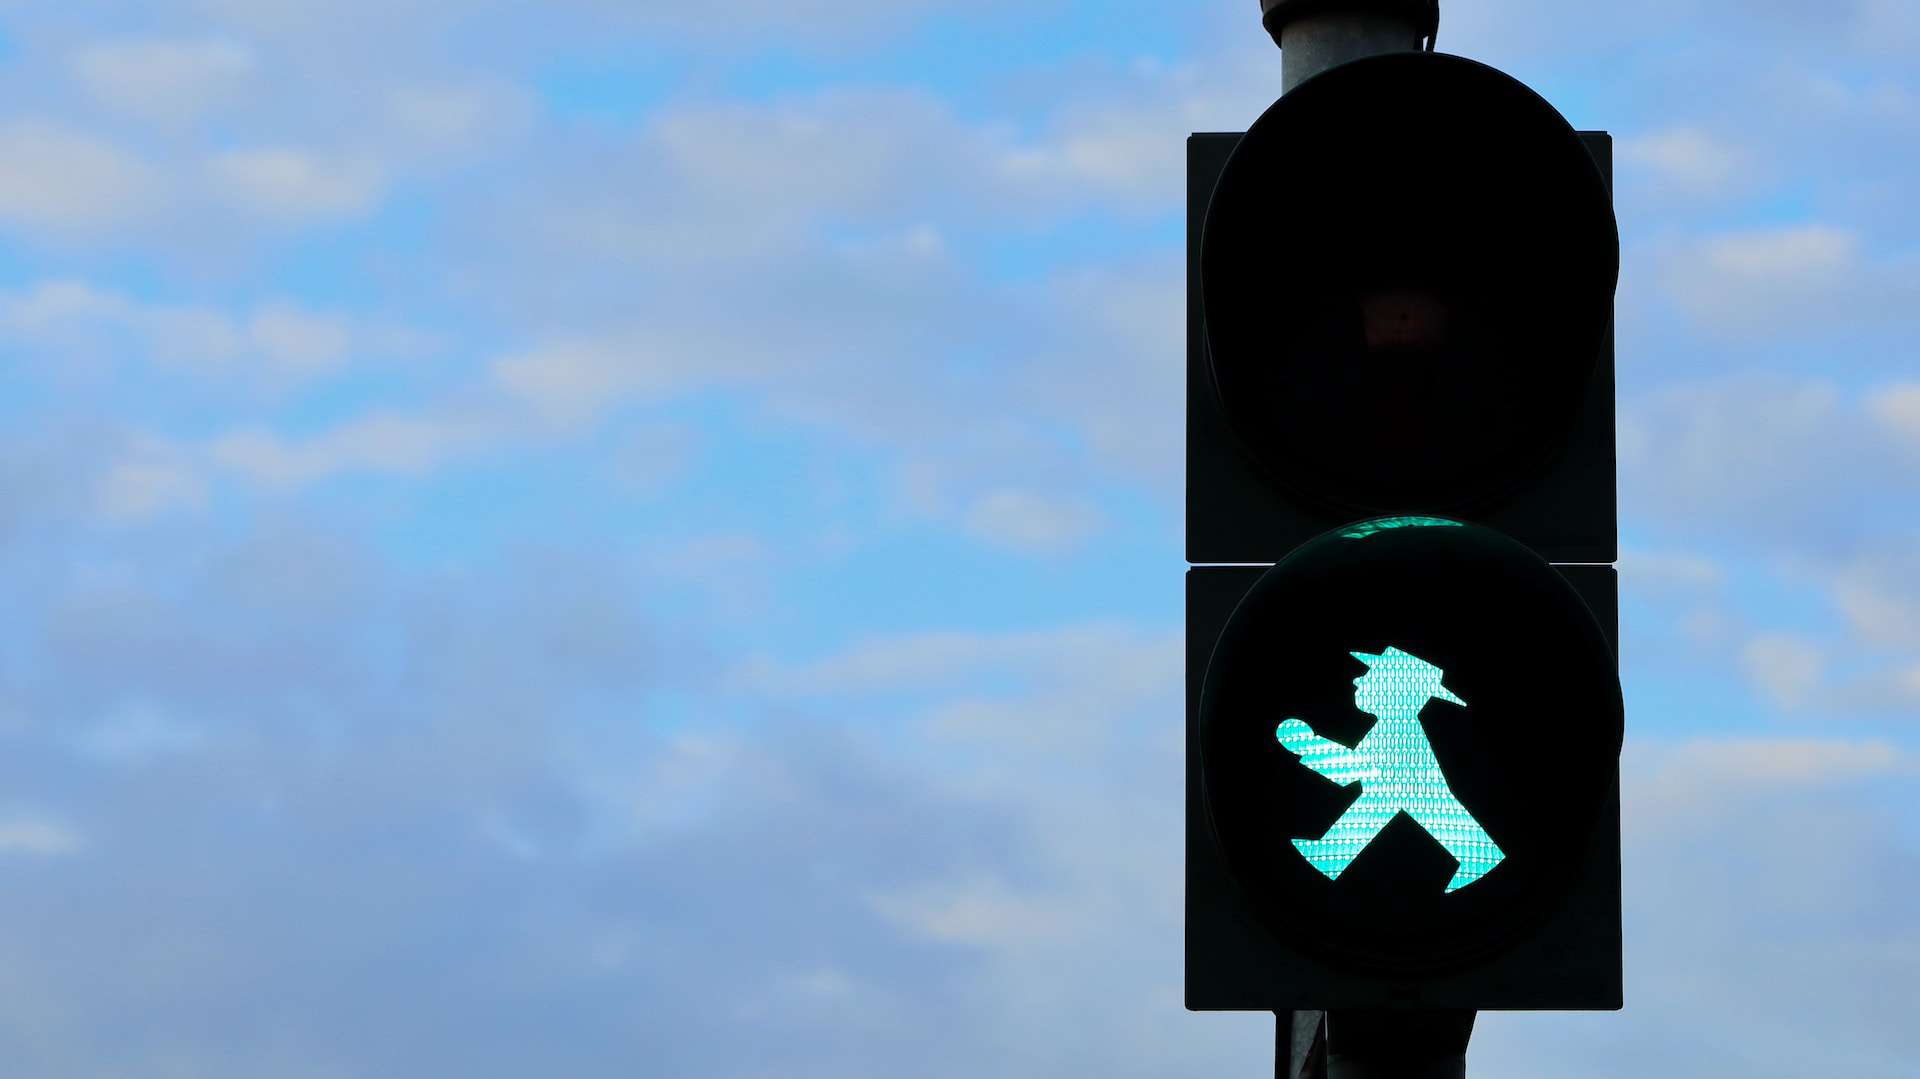 Green man at traffic lights